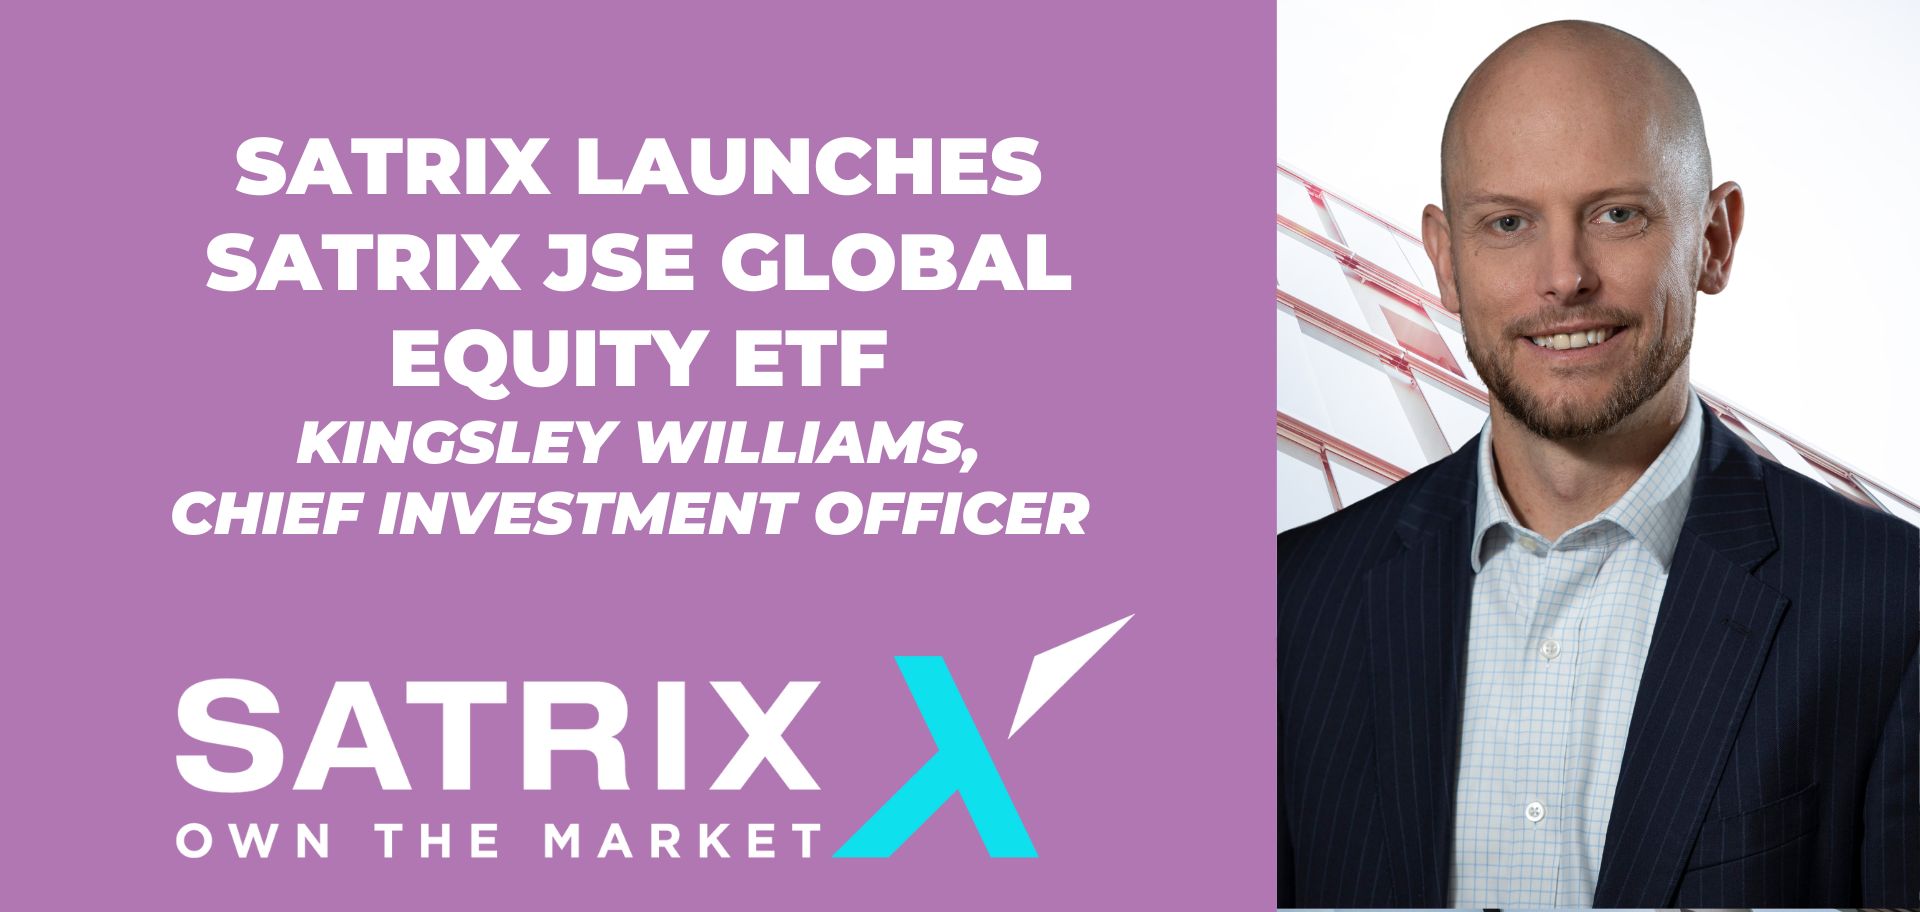 Satrix launches Satrix JSE Global Equity ETF